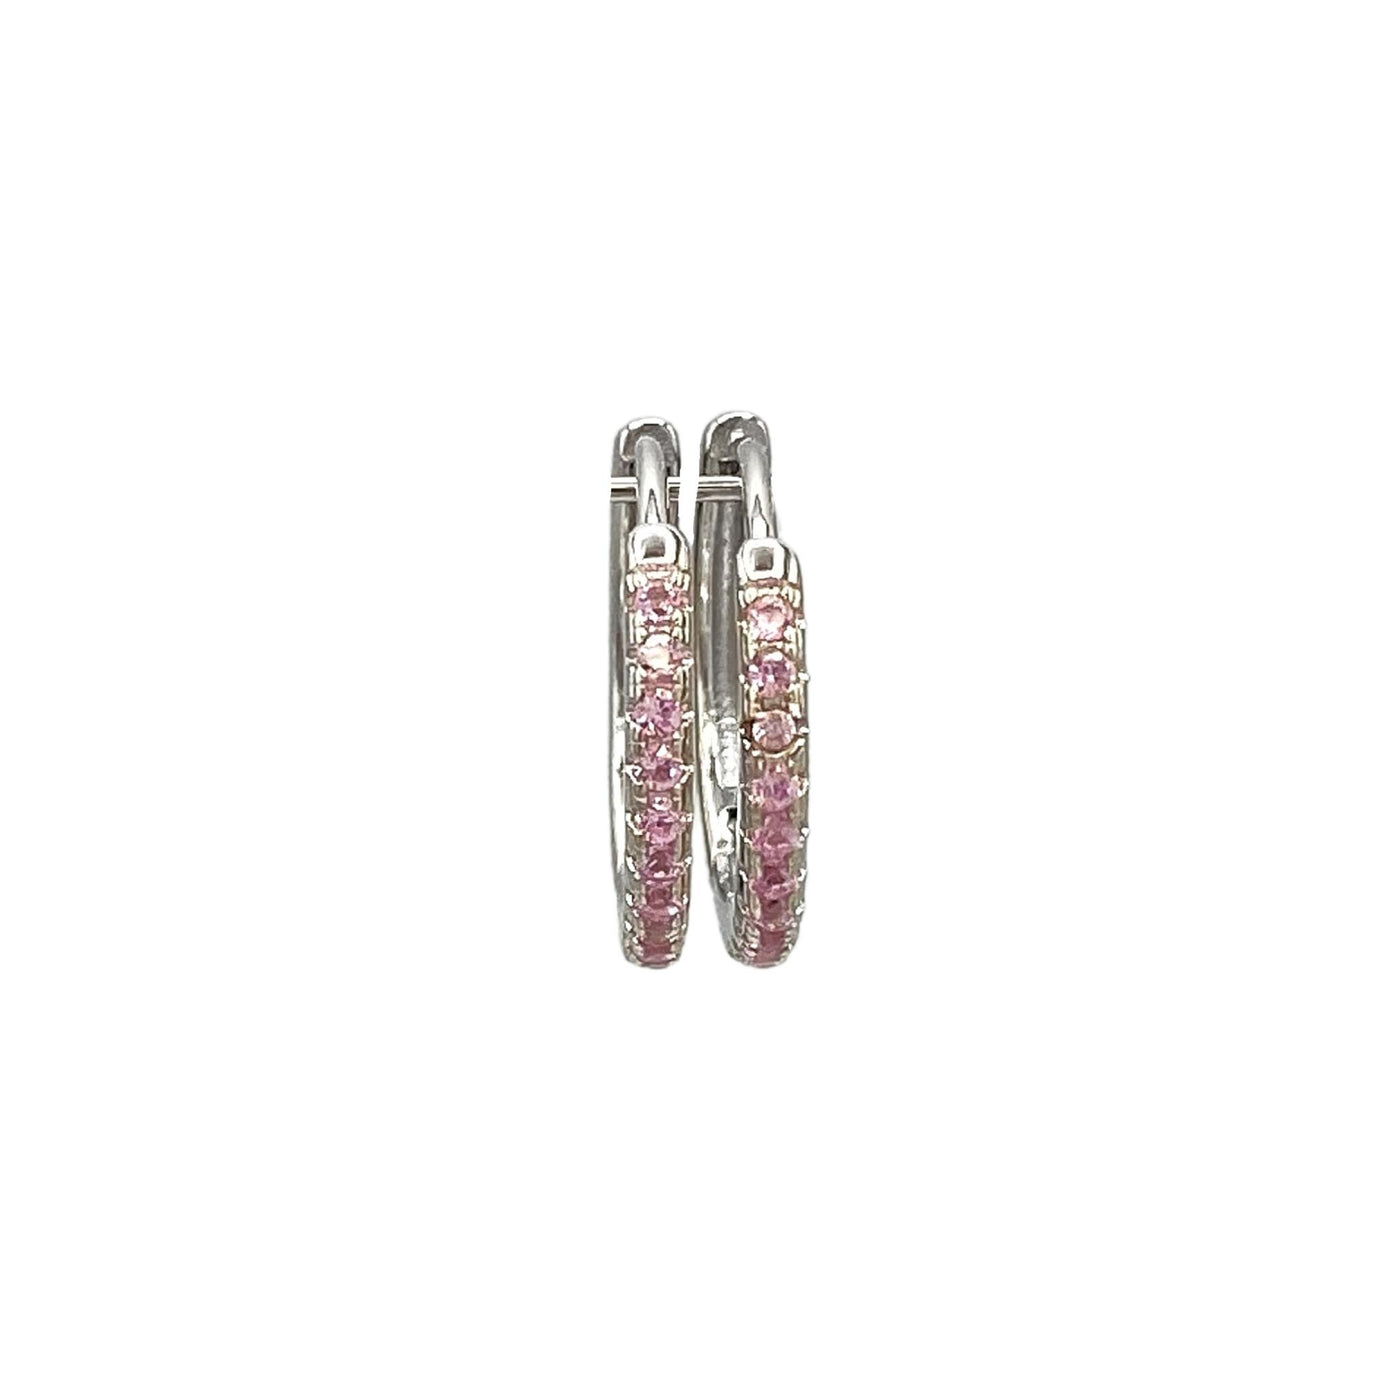 Silver hoop earrings with stones - rhodium -15 mm